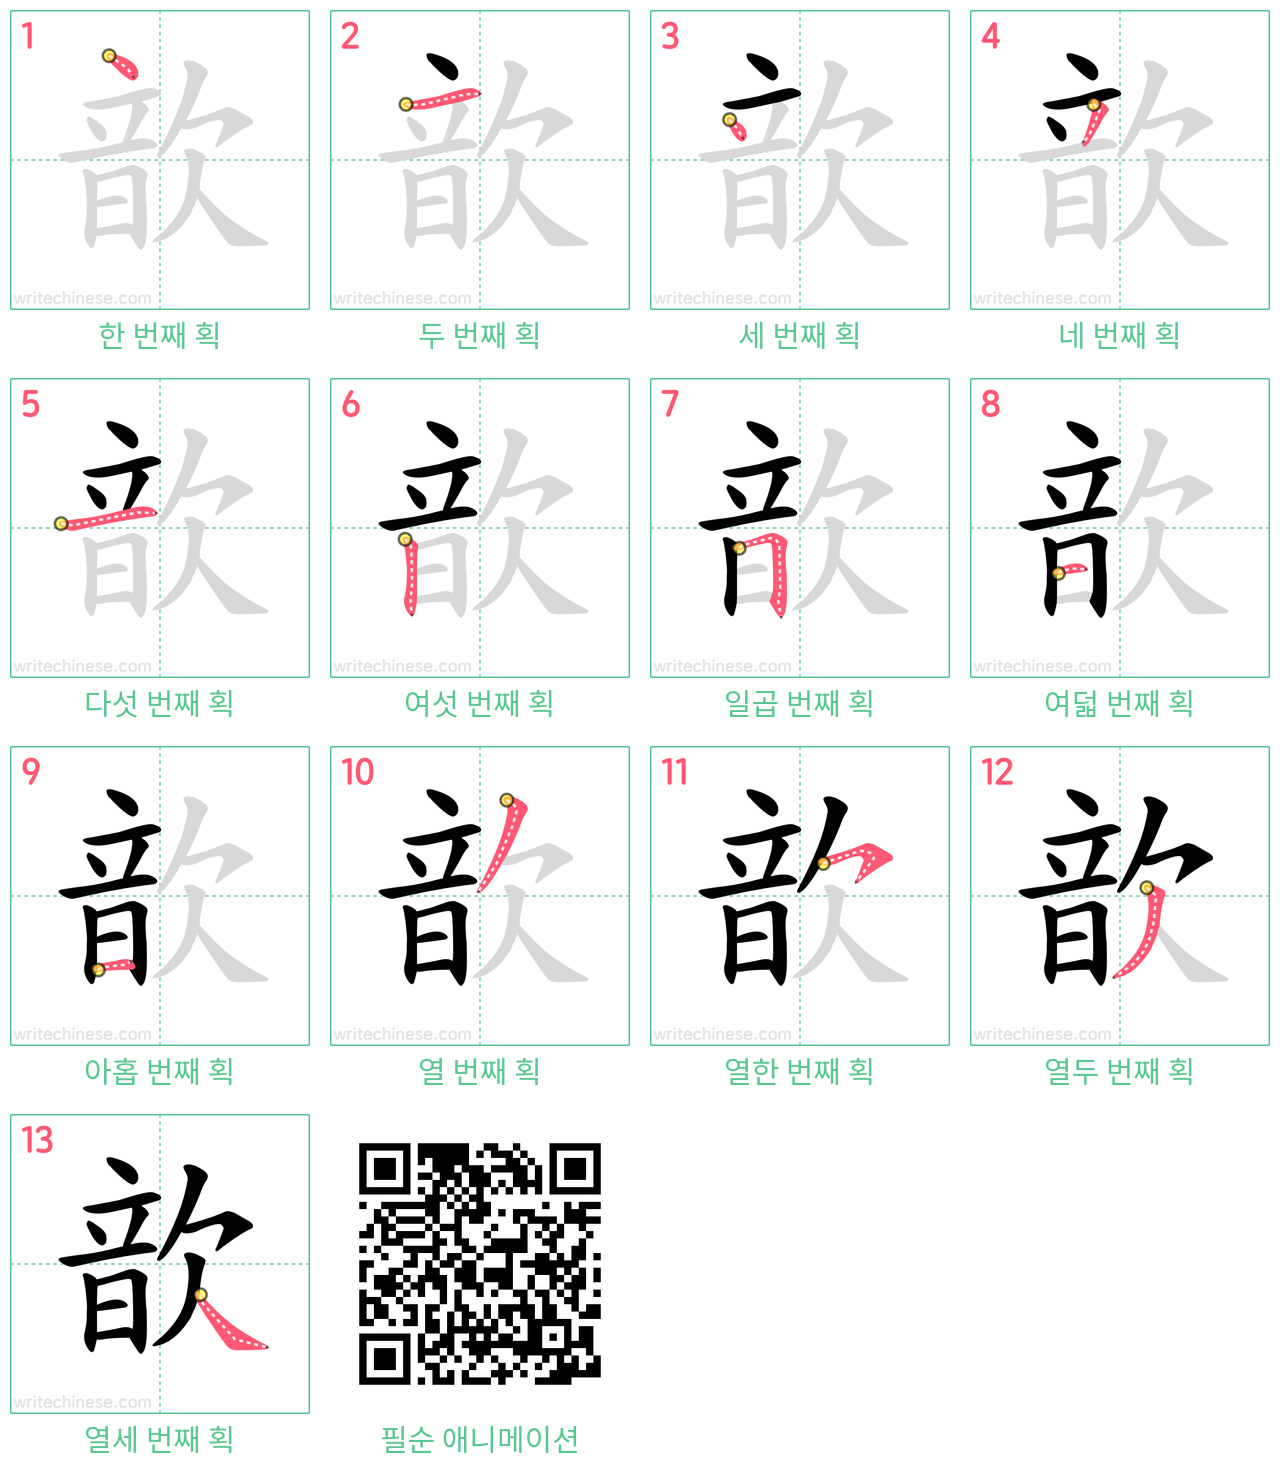 歆 step-by-step stroke order diagrams